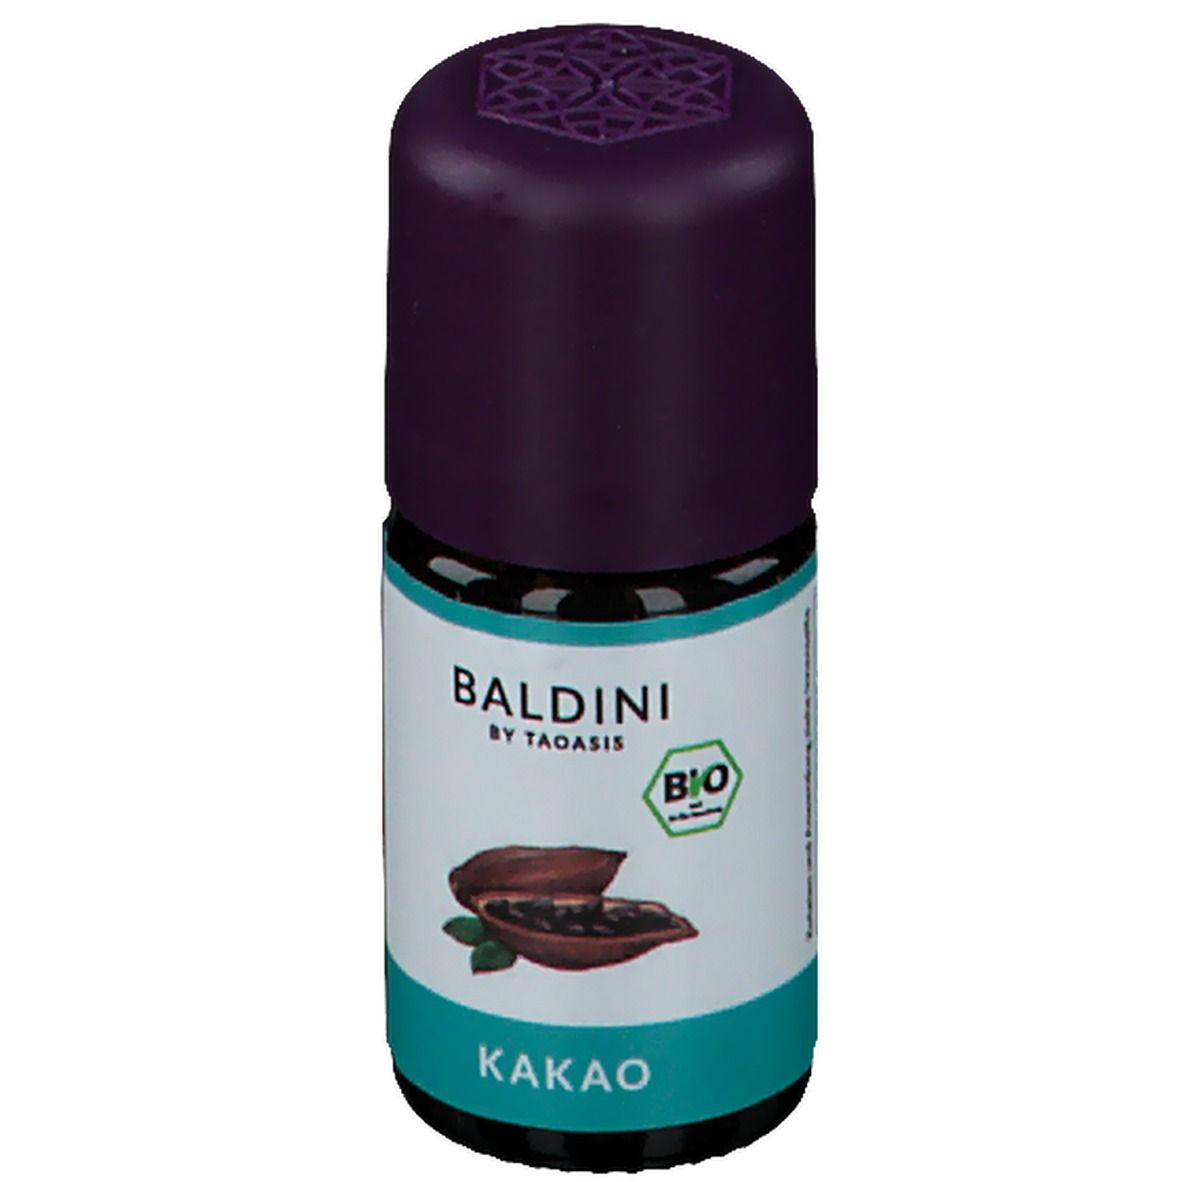 BALDINI BY TAOASIS BIO Kakao Aromaöl